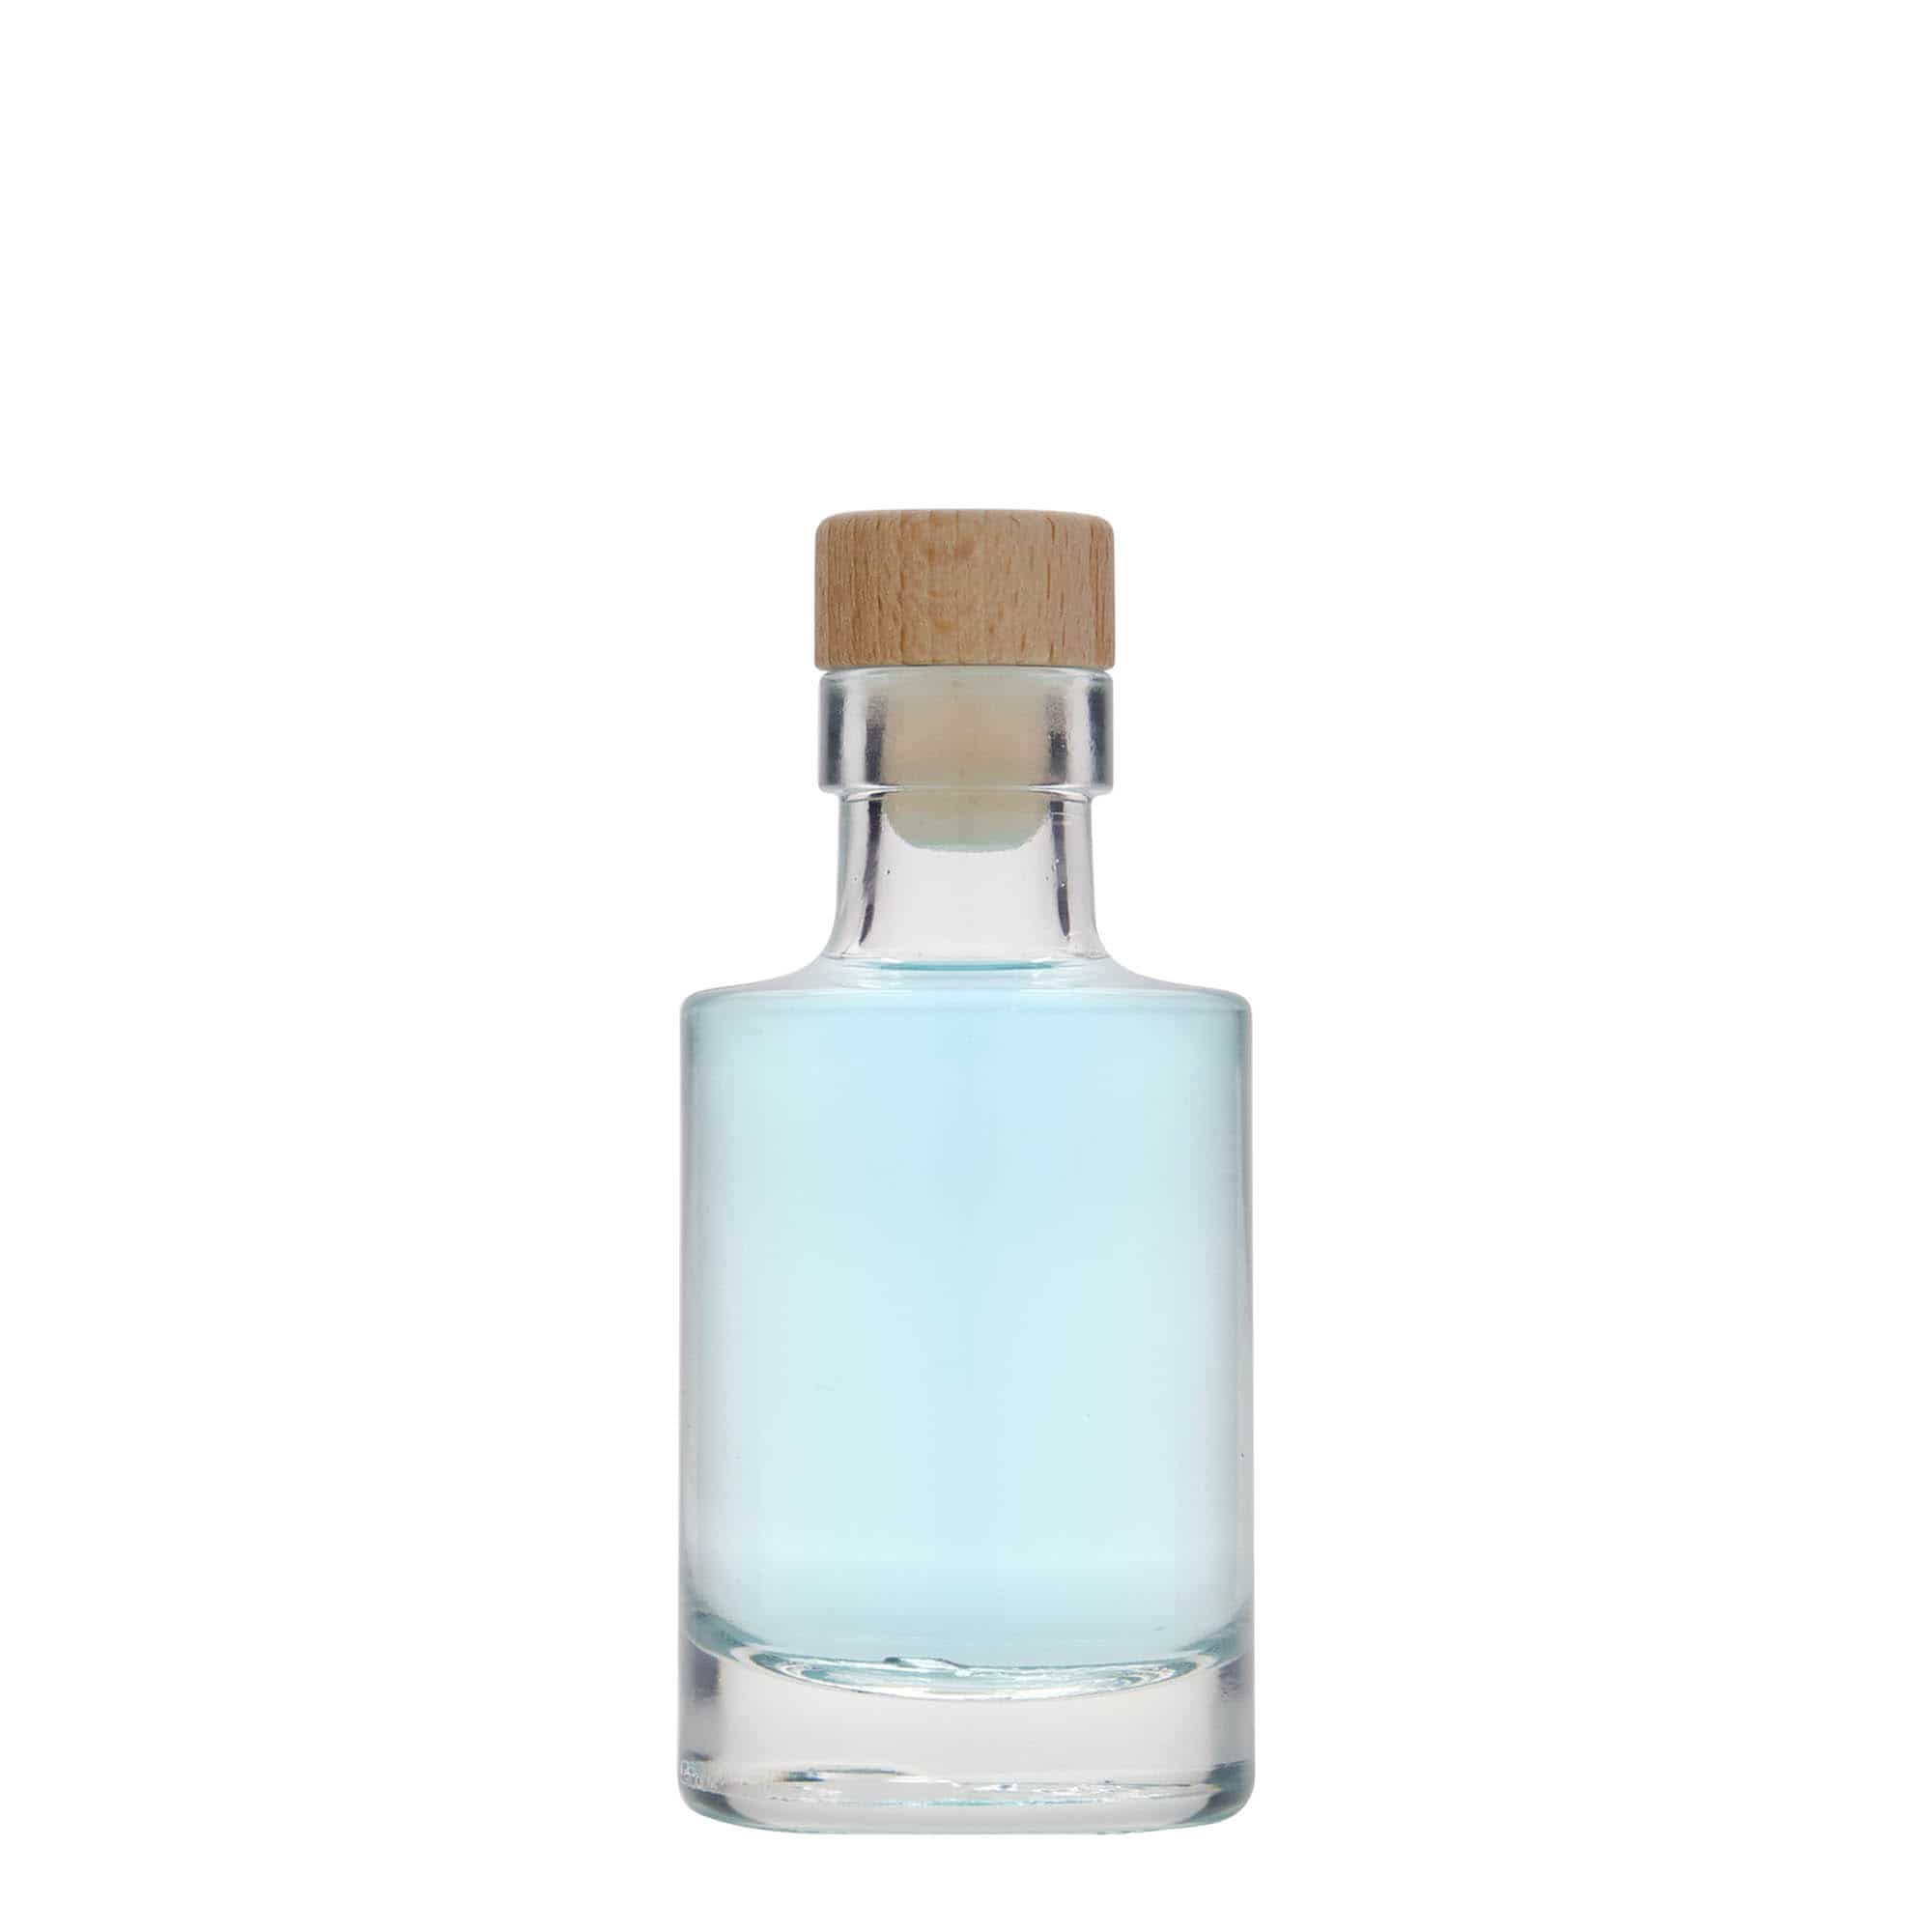 Botella de vidrio 50 cl con cierre de rosca de aluminio grabada